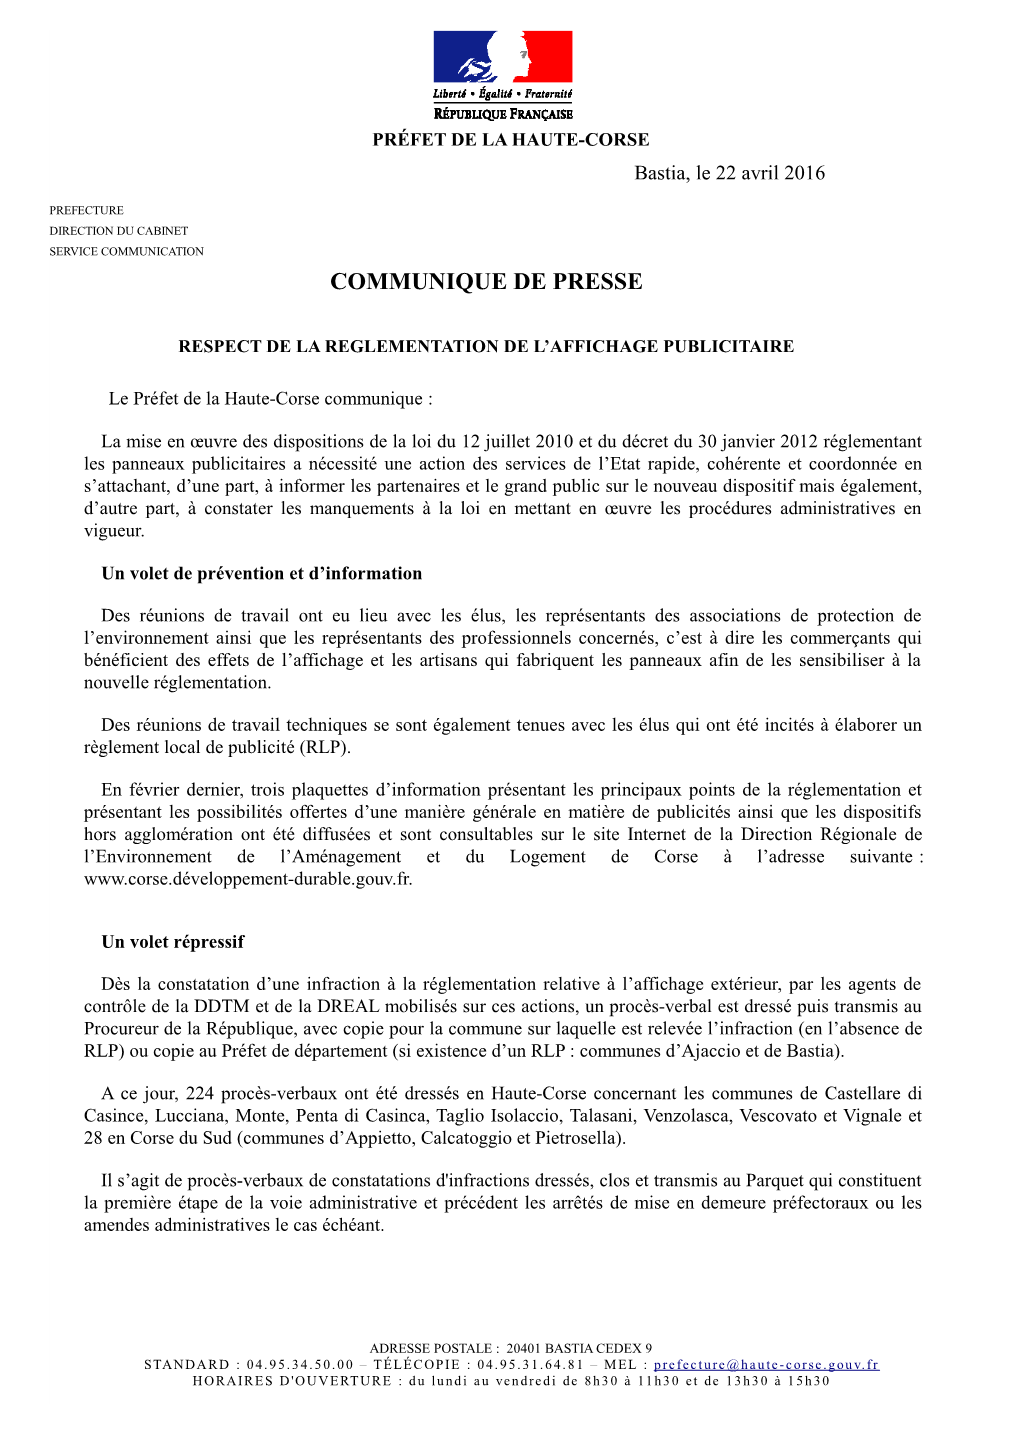 Le Communiqué De La Préfecture De Haute-Corse